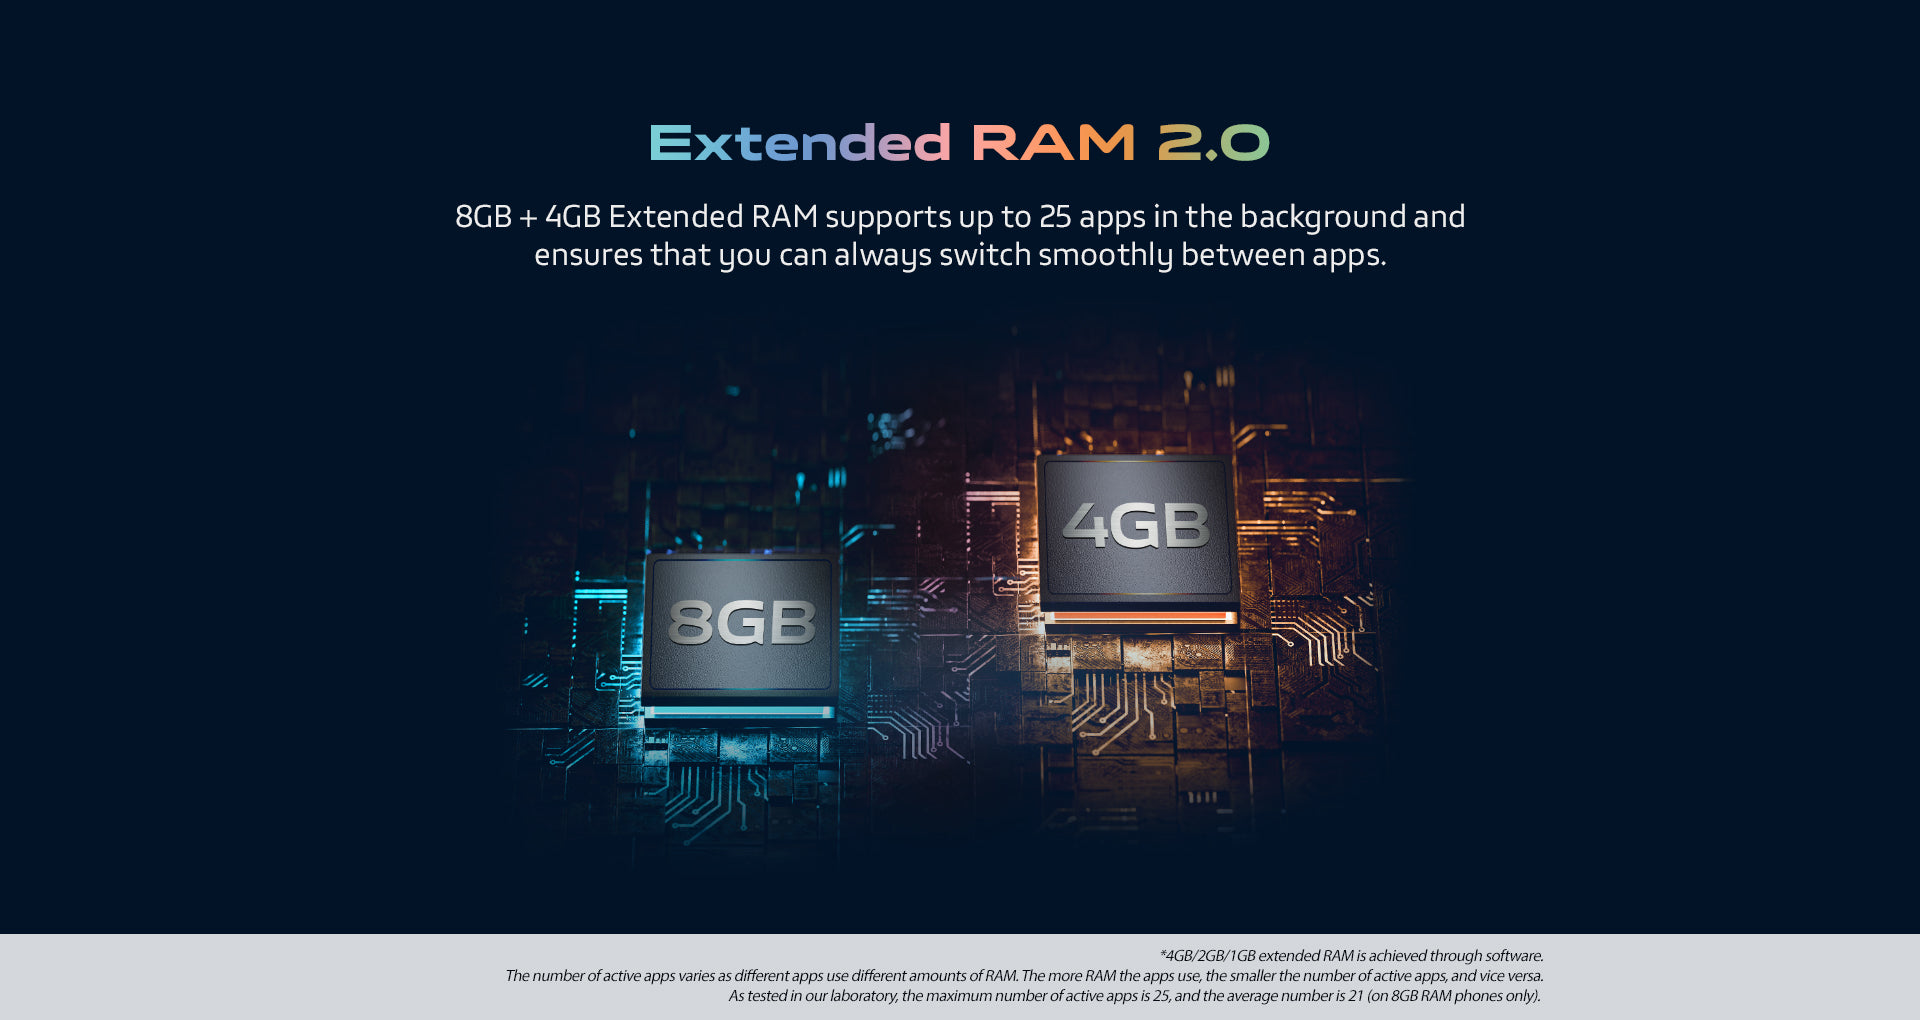 Extended RAM 2.0